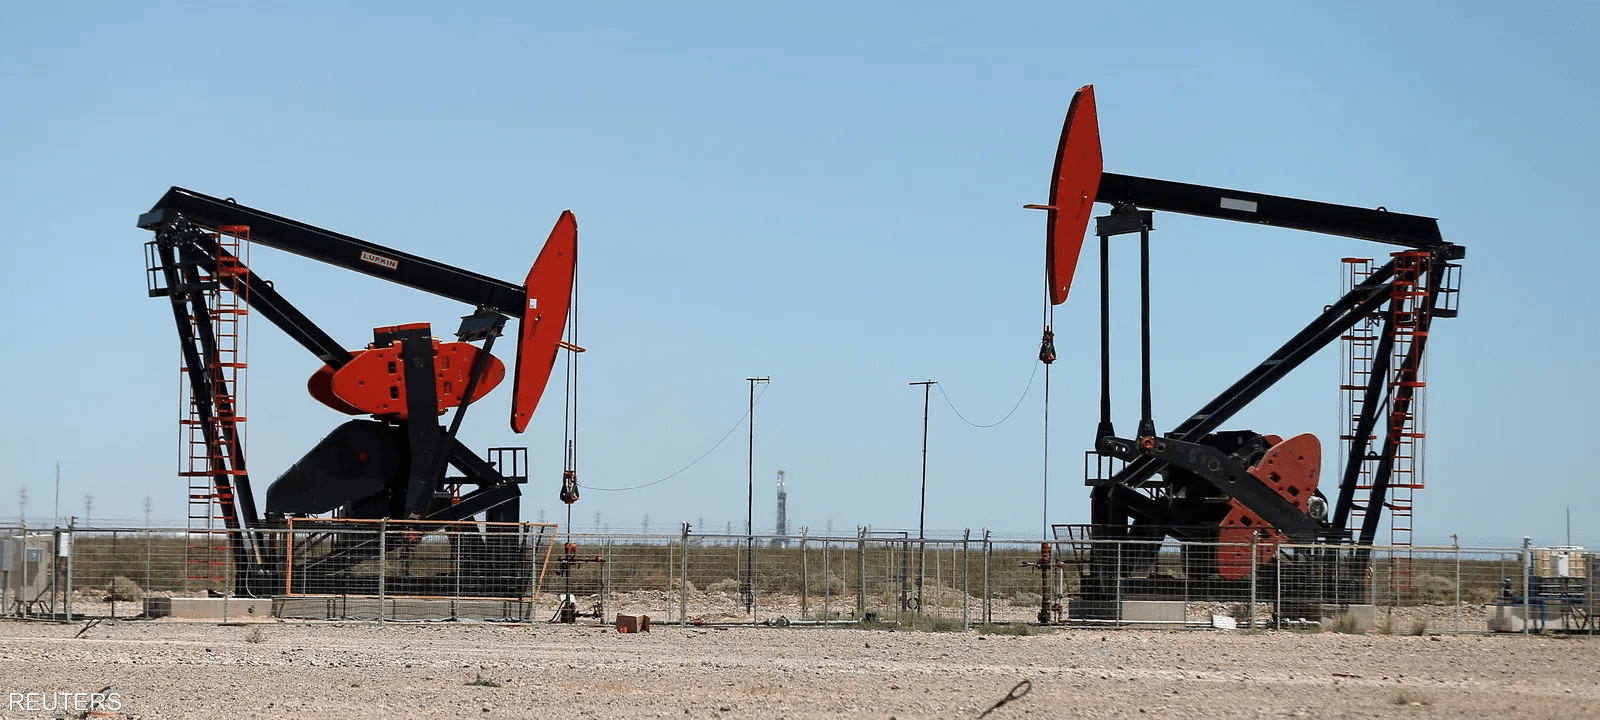 ضعف الإنتاج في أميركا يدعم أسعار النفط